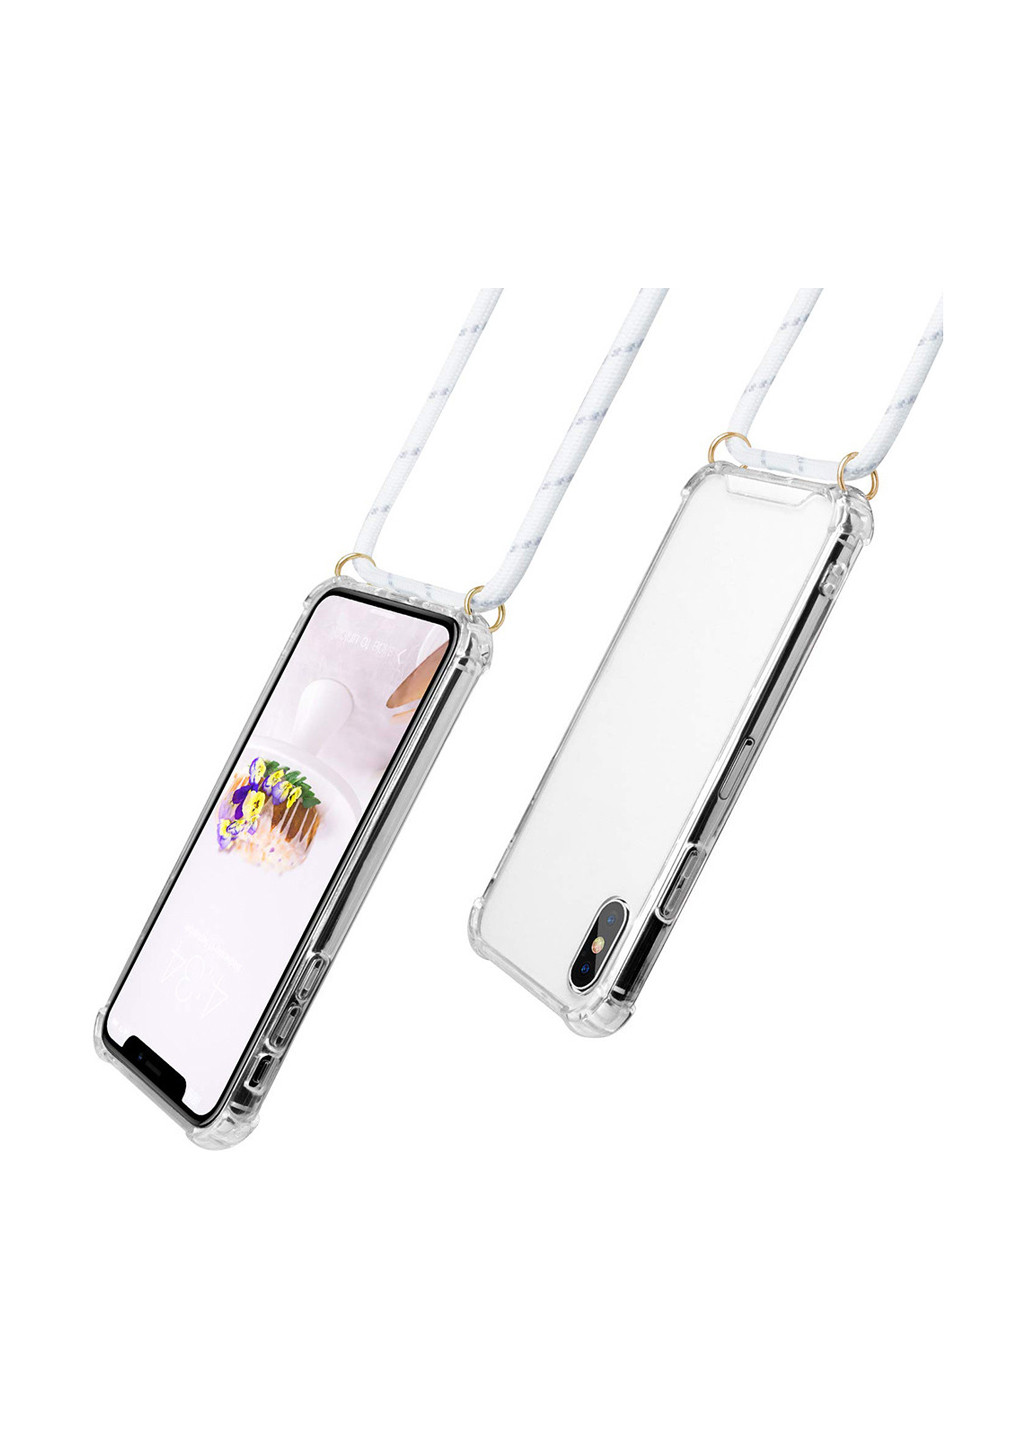 Силиконовый чехол Strap для Apple iPhone 7/8 White (704224) BeCover strap для apple iphone 7/8 white (704224) (154454139)